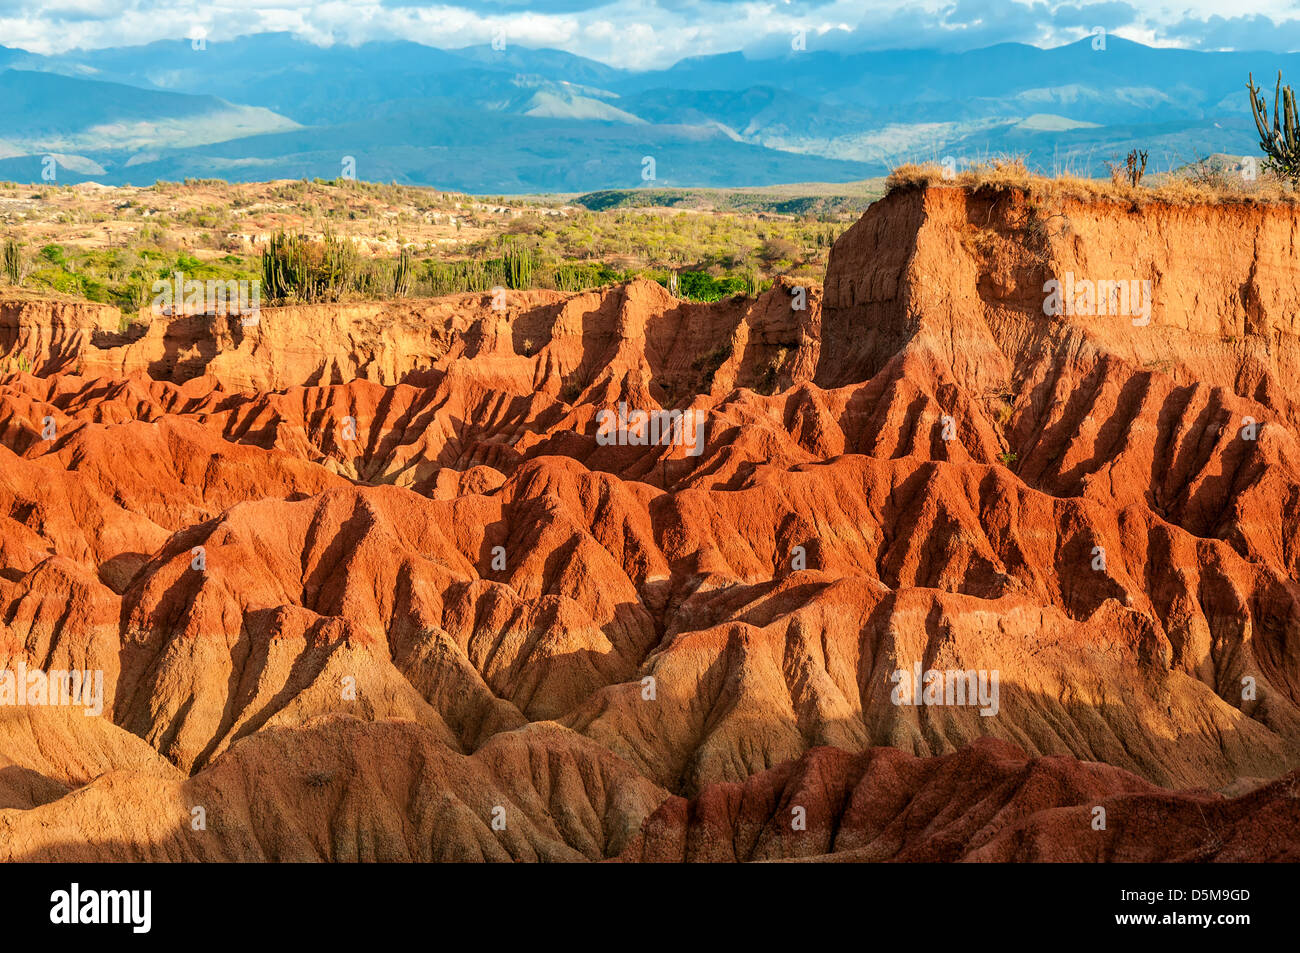 Red Hills de Tatacoa désert baigné de soleil dans les provinces de Huila, en Colombie Banque D'Images